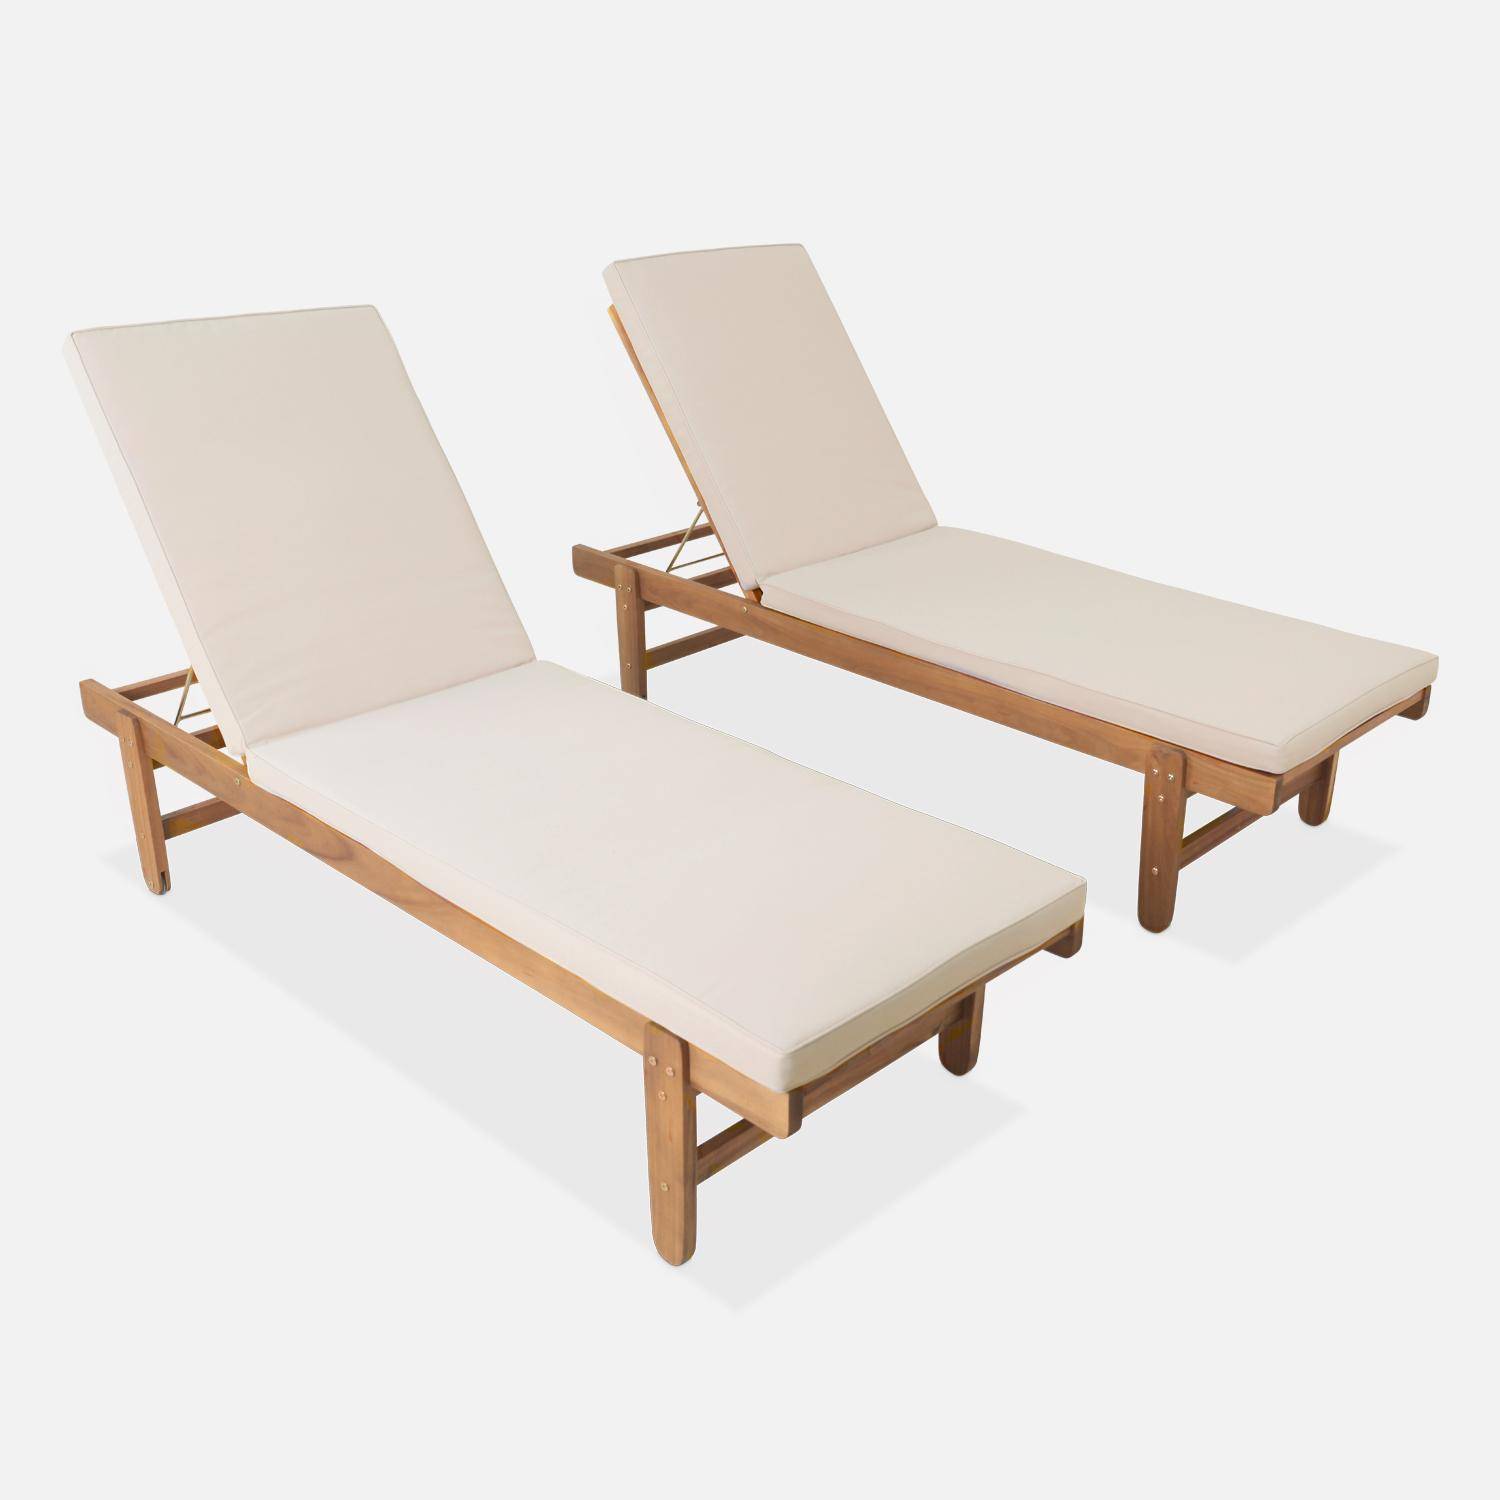 Set van 2 ligstoelen van FSC Acacia – AREQUIPA – Ligstoelen met beige kussen en wielen, multipositioneel Photo2